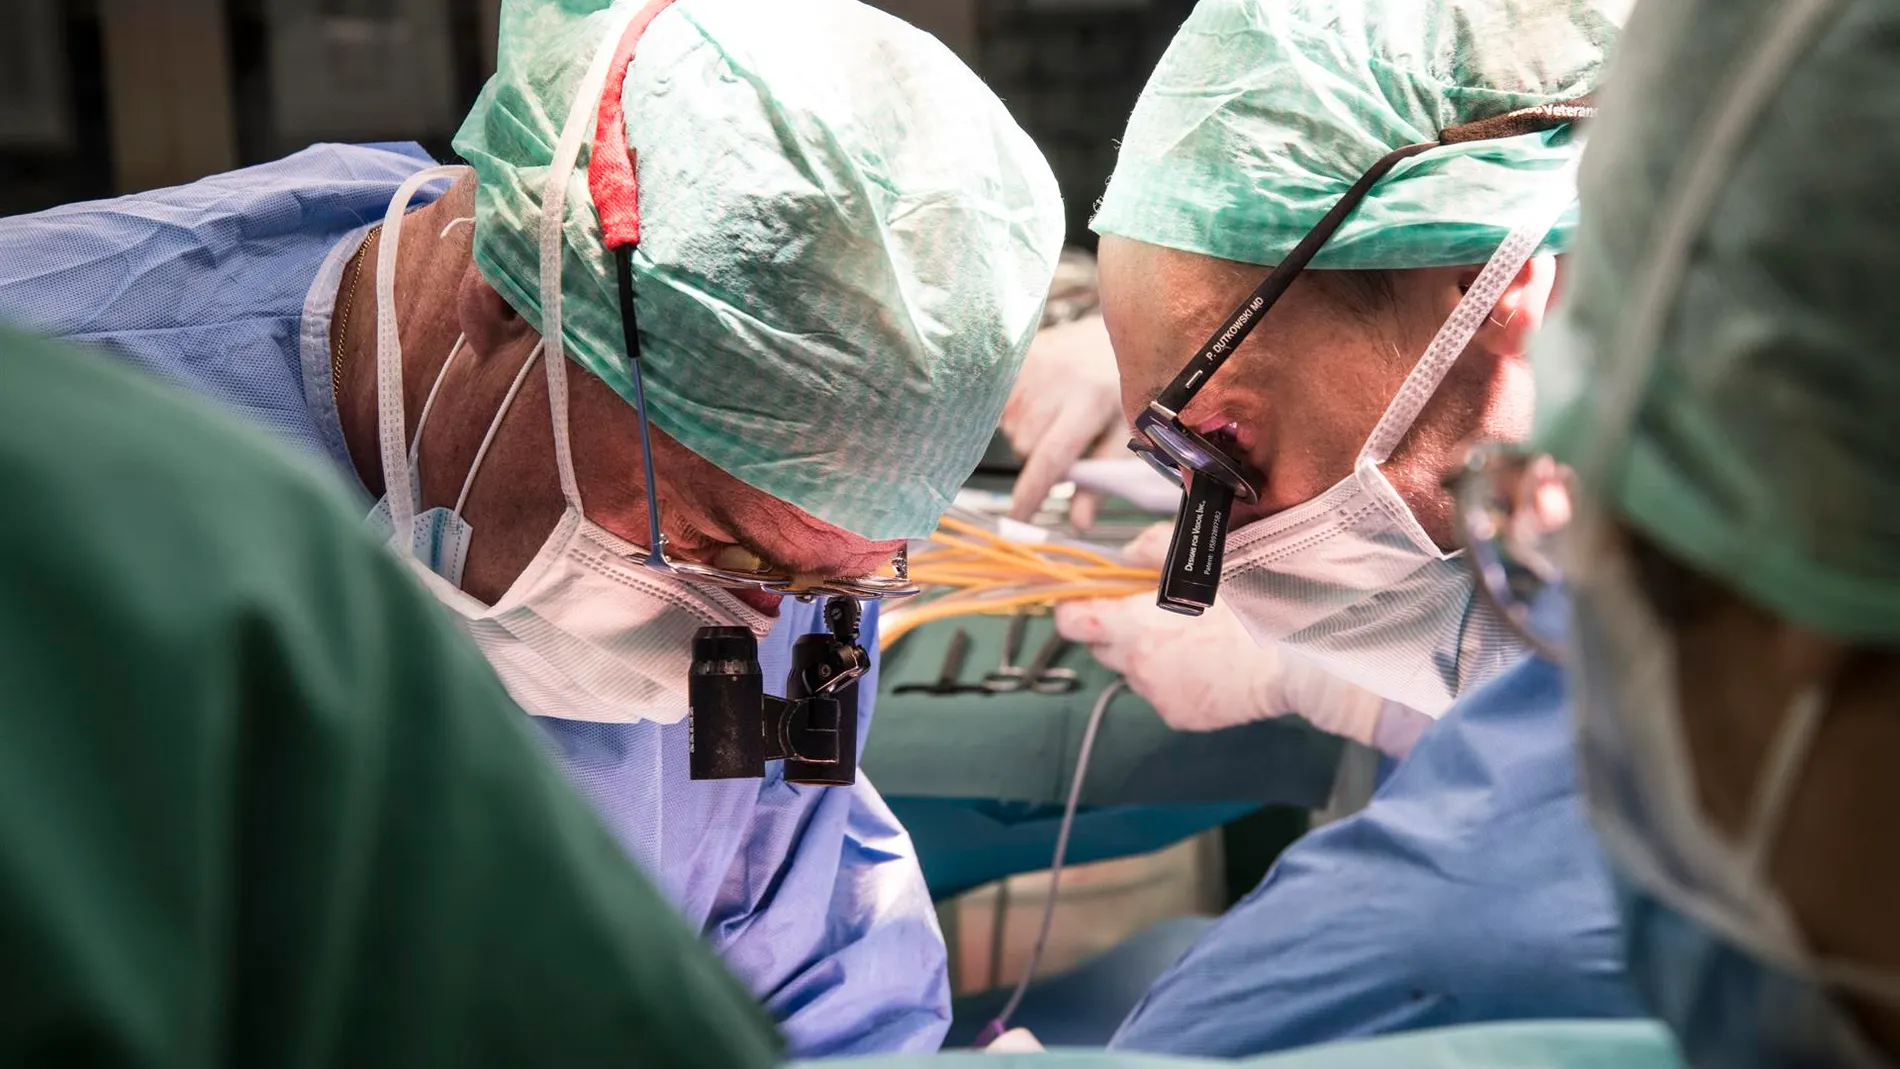 Consiguen trasplantar con éxito un hígado humano después de repararlo durante tres días fuera del cuerpo